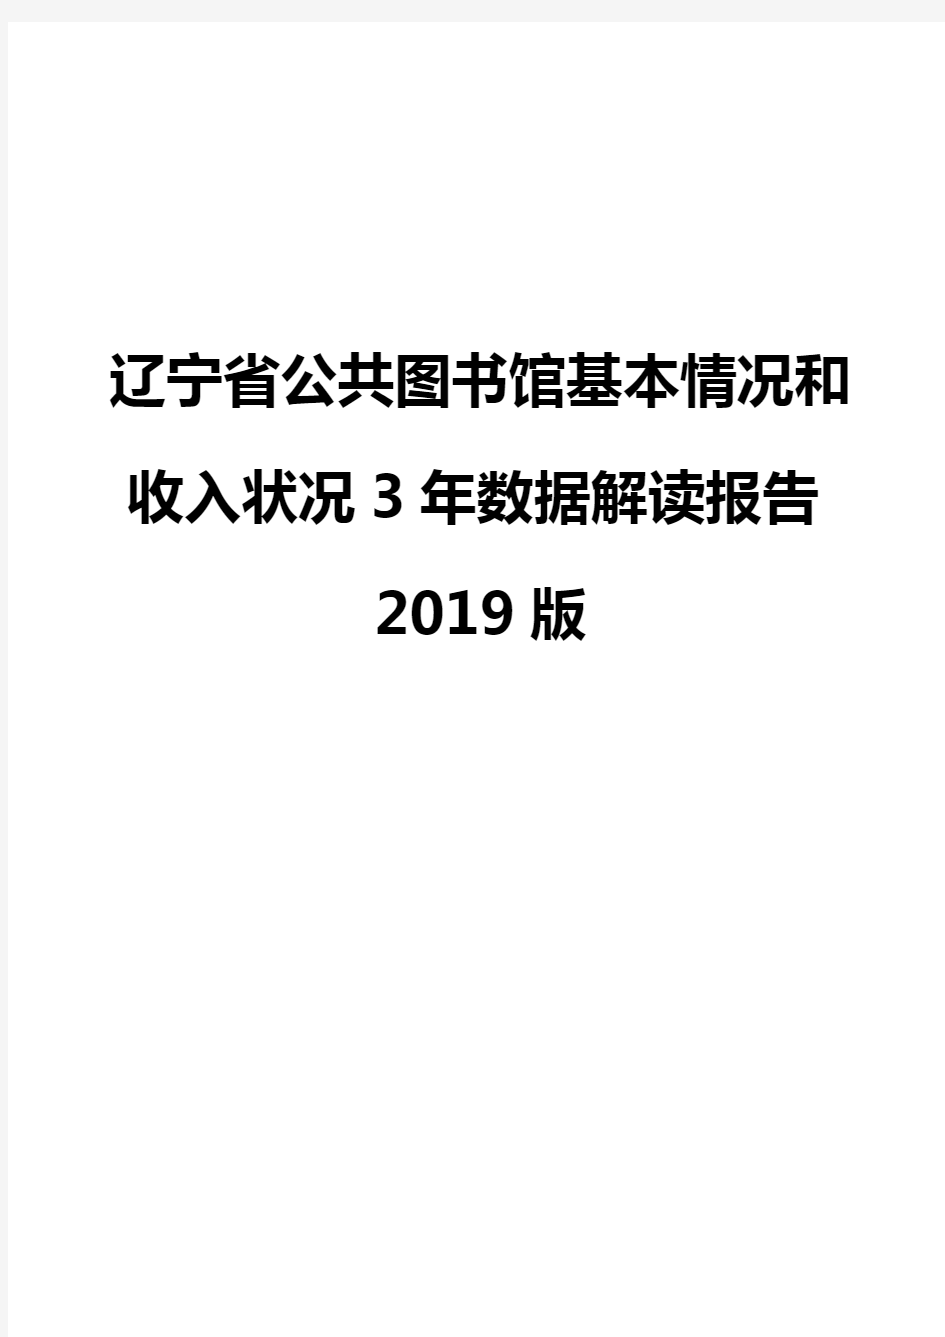 辽宁省公共图书馆基本情况和收入状况3年数据解读报告2019版